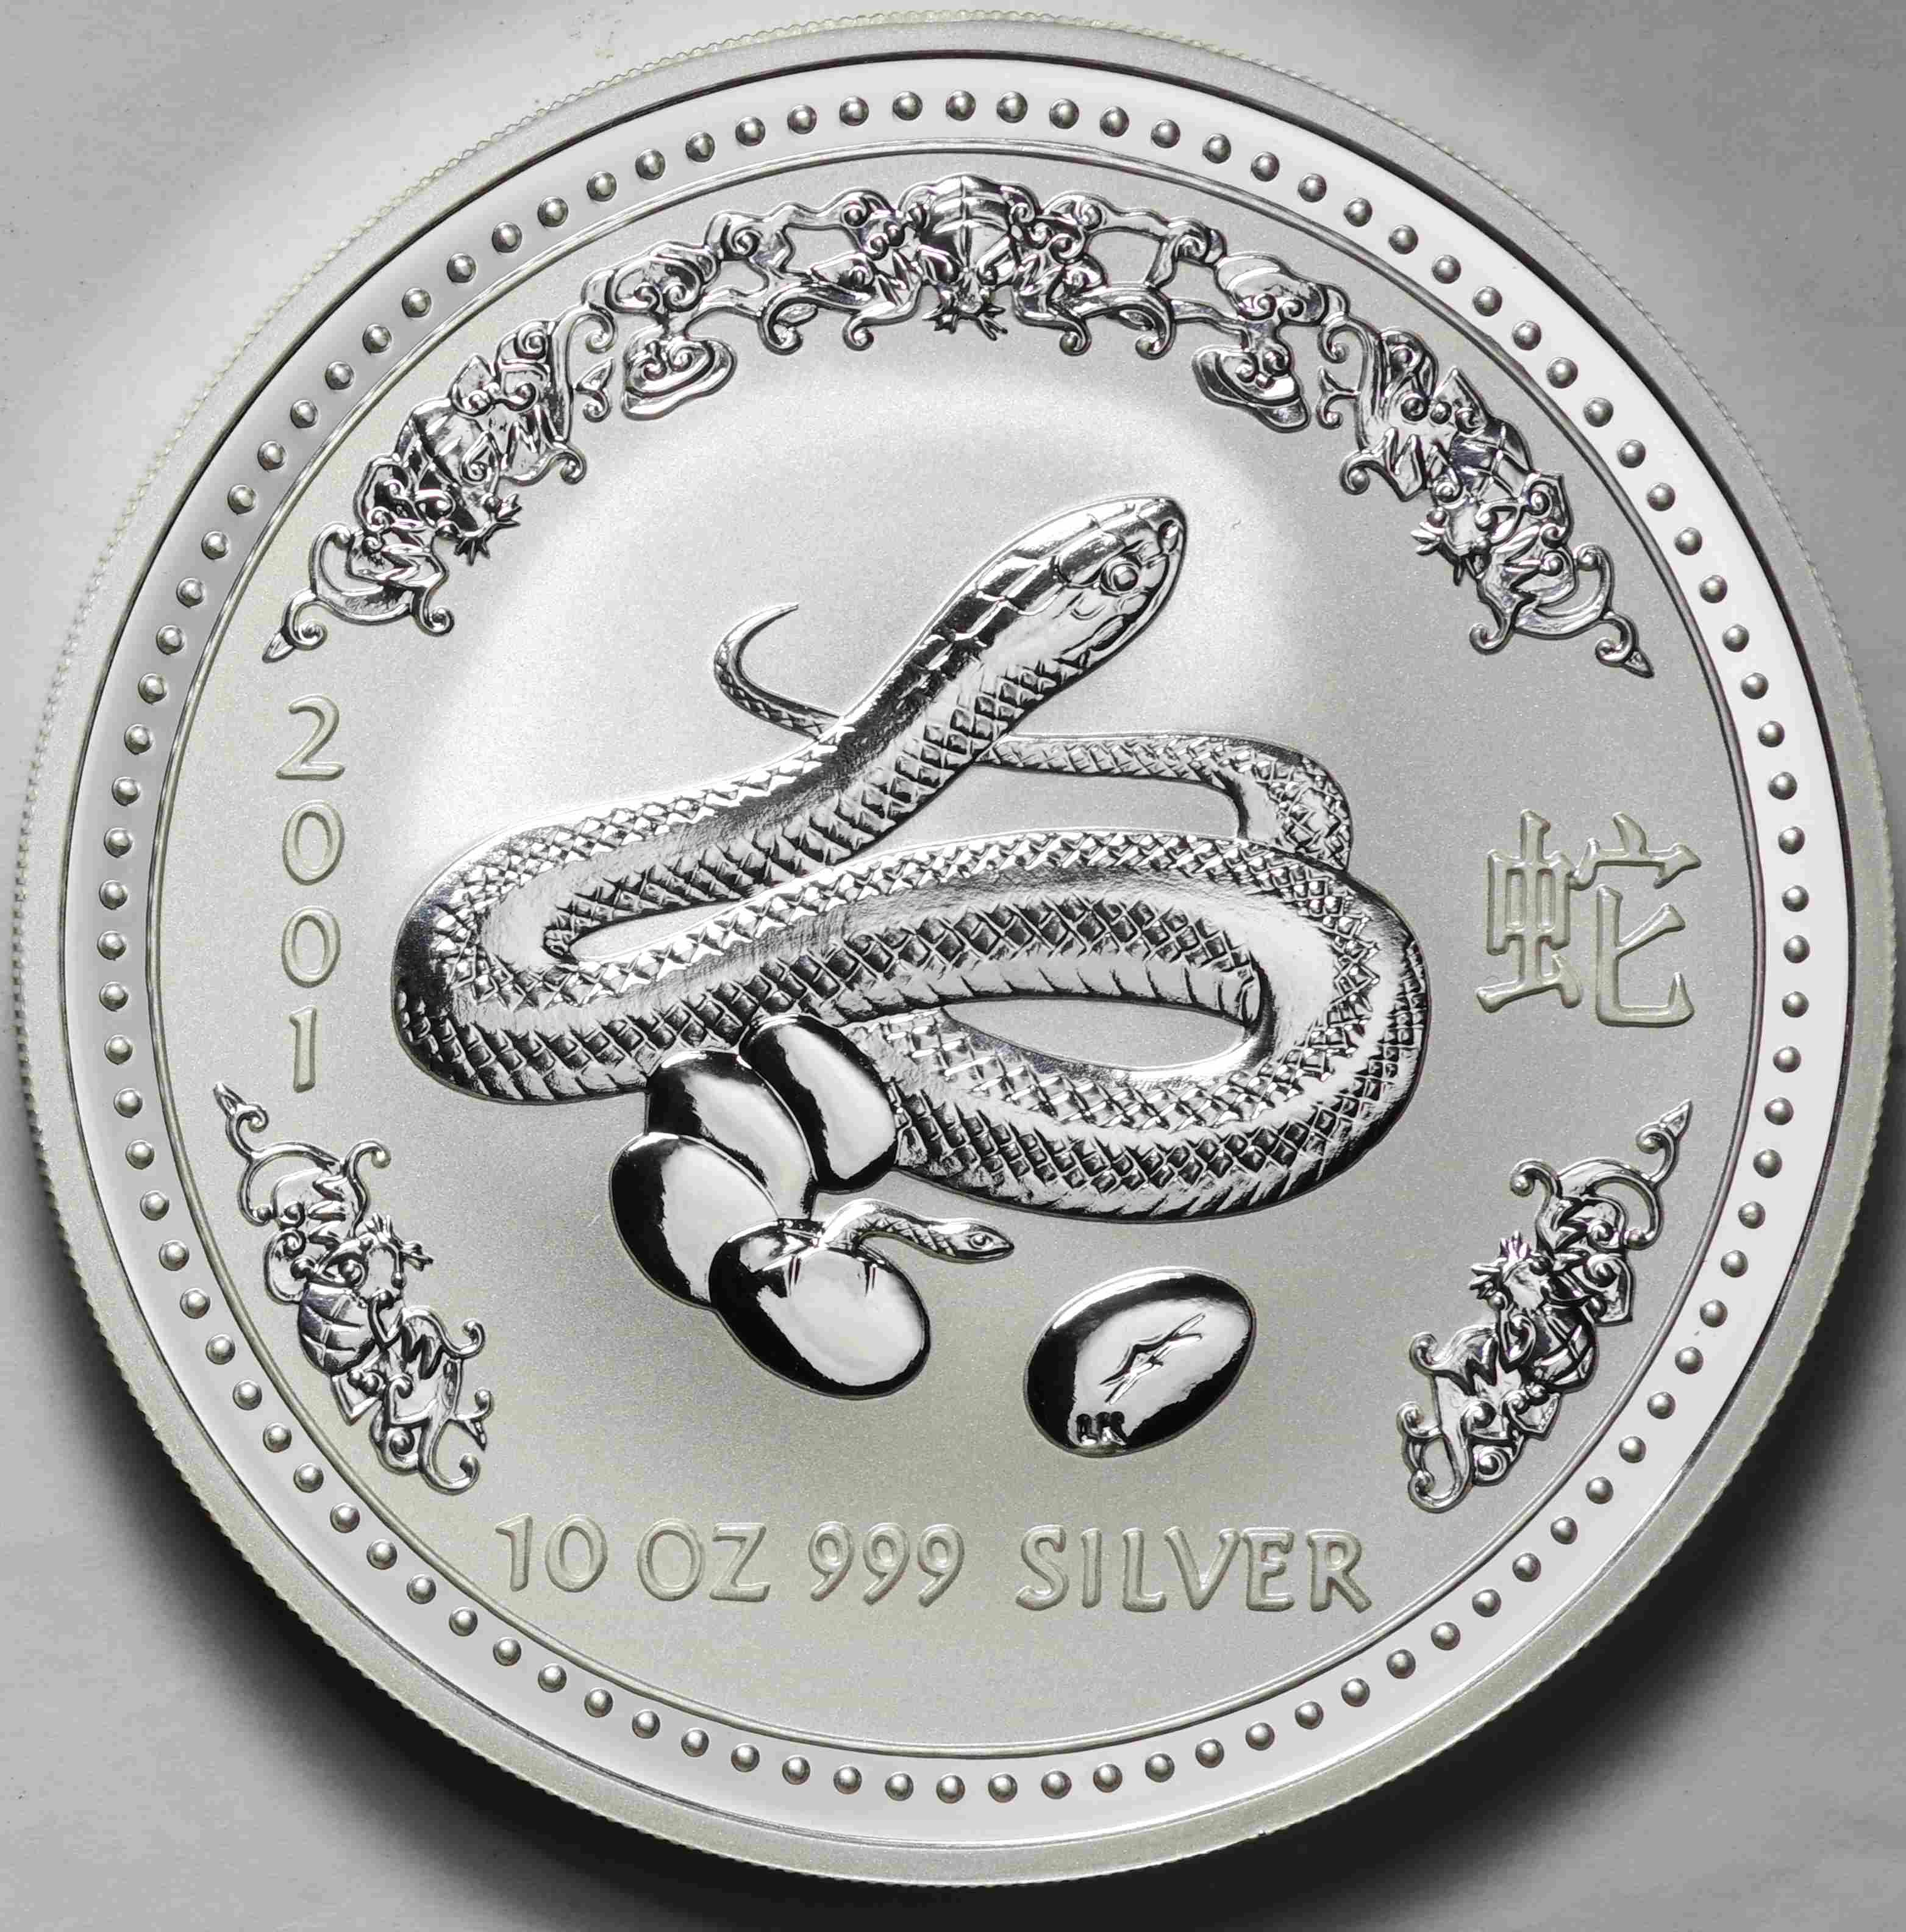 オーストラリア-Australia. 十二支干支 巳年蛇図 10ドル(10オンス)銀貨 2001年 KM539 | Taisei Auction